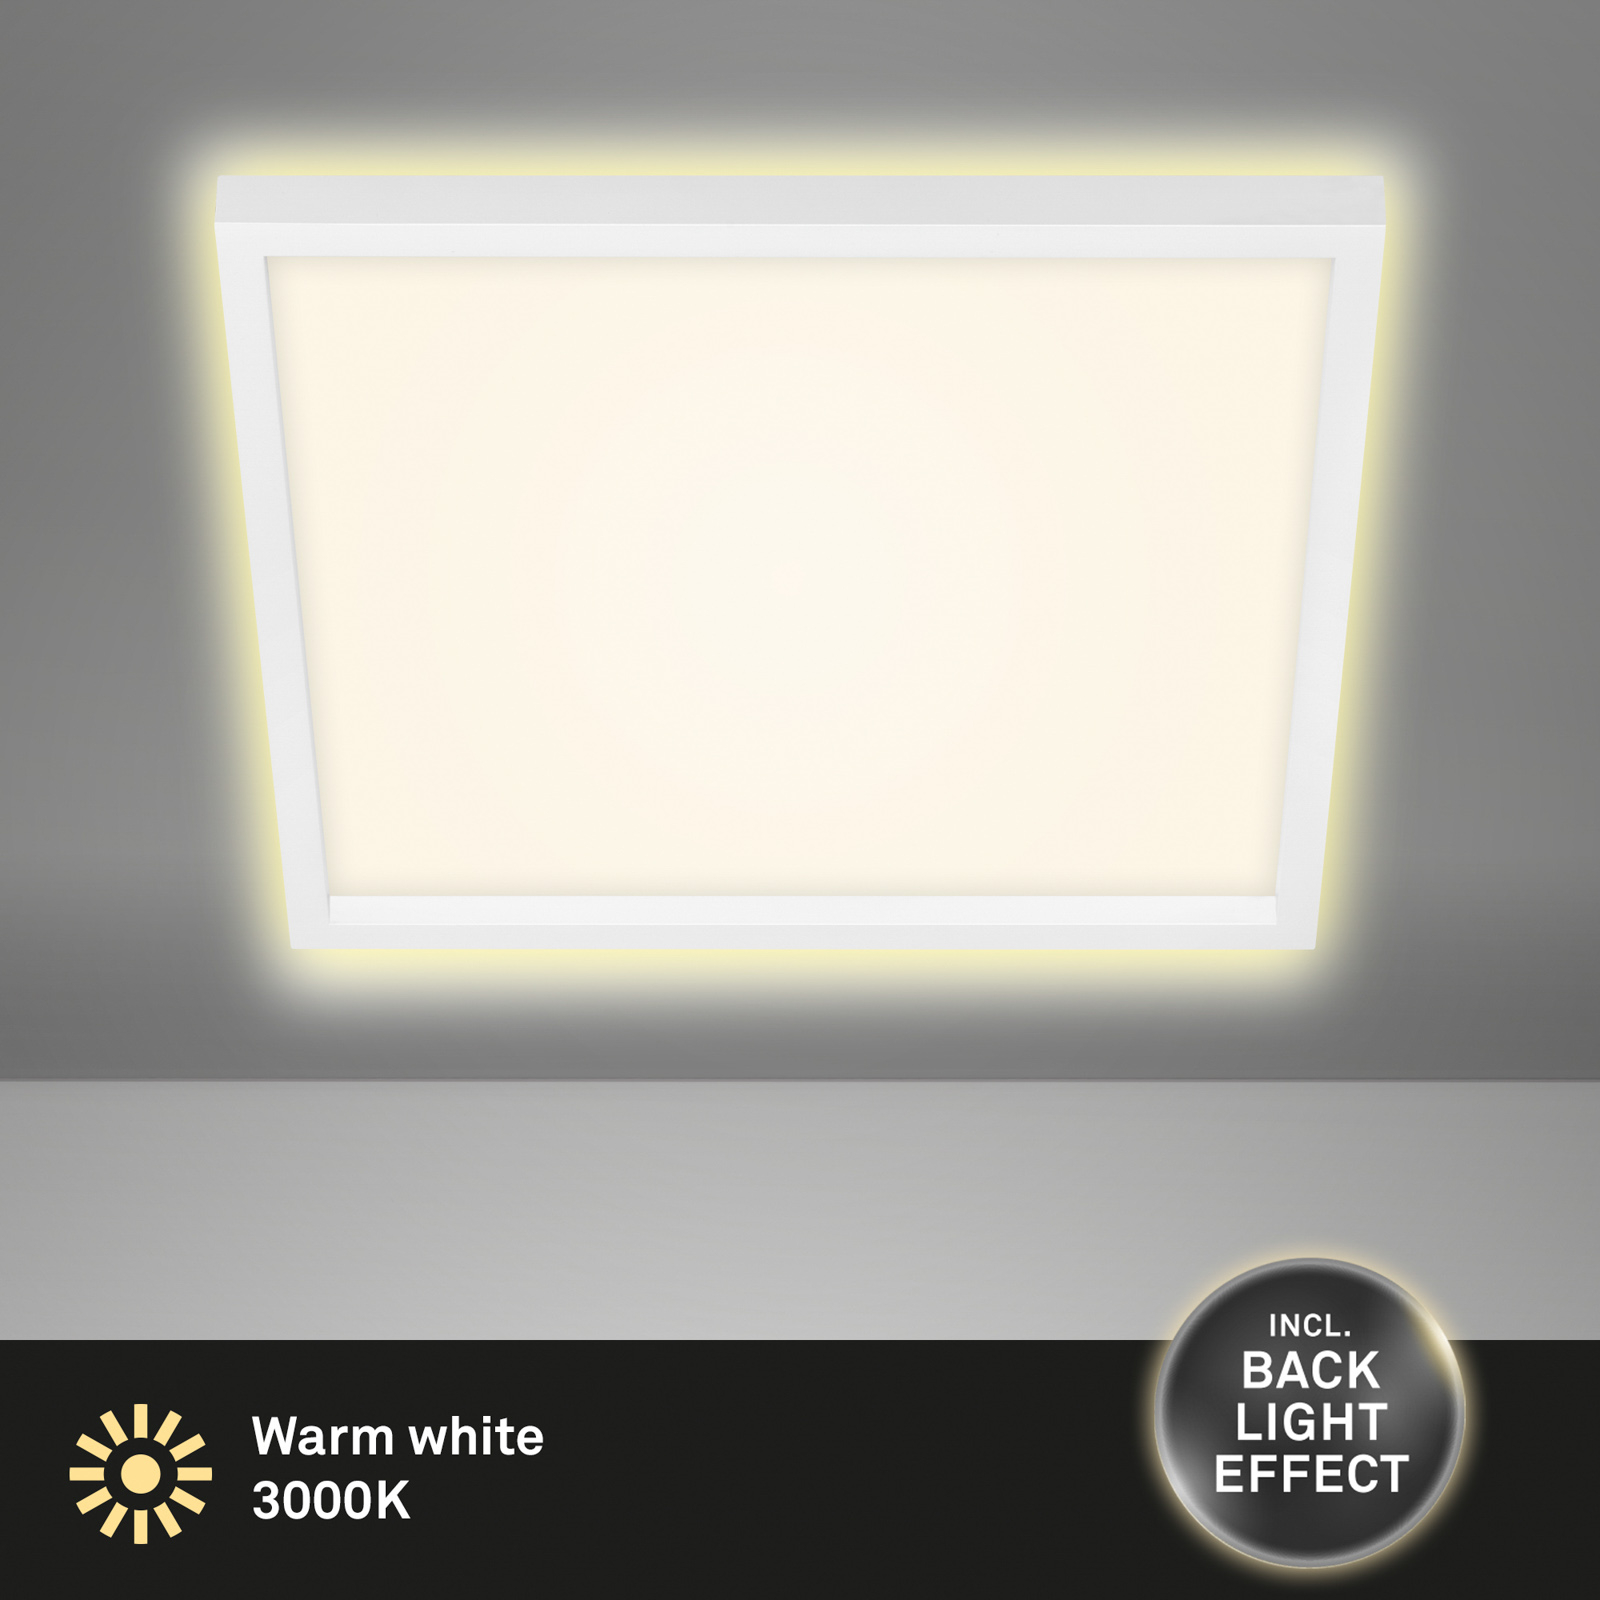 LED-Deckenlampe 7364, 42 x 42 cm, weiß